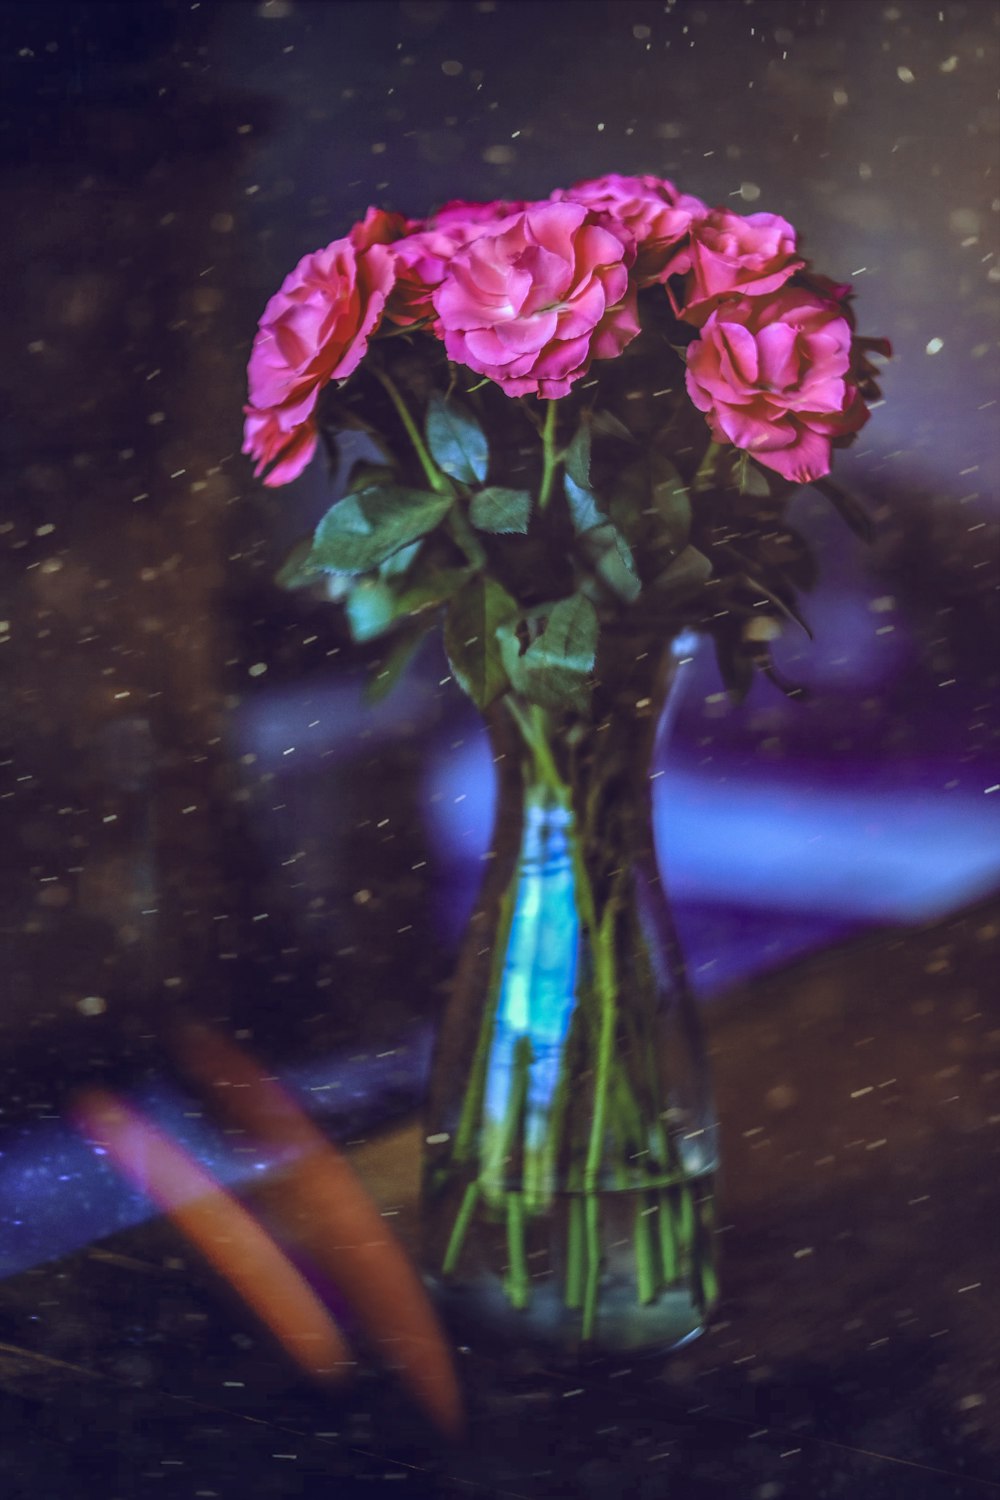 pink flowers in vase